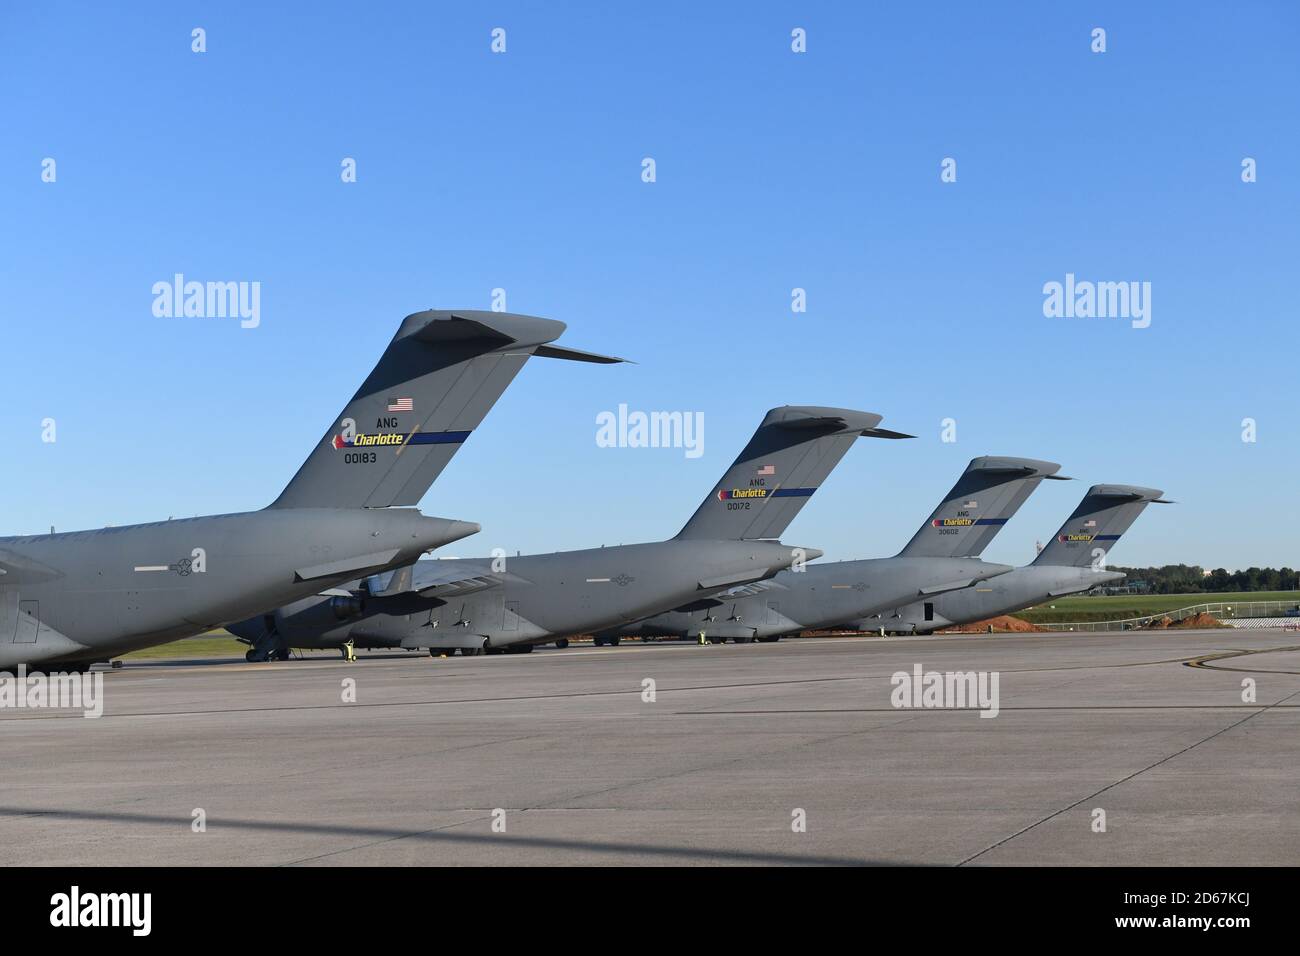 Fünf Flugzeuge des Typs C-17 Globemaster III, die zum 145. Luftlift Wing gehören, werden an einem sonnigen Tag auf der North Carolina Air National Guard Base, Charlotte Douglas International Airport, 14. Oktober 2020 in Folge geparkt. Der 145. Luftlift-Flügel begann im Oktober 2017 mit der Umstellung von C-130 Hercules auf die C-17 und wurde im Oktober 2020 offiziell eingestellt. Stockfoto